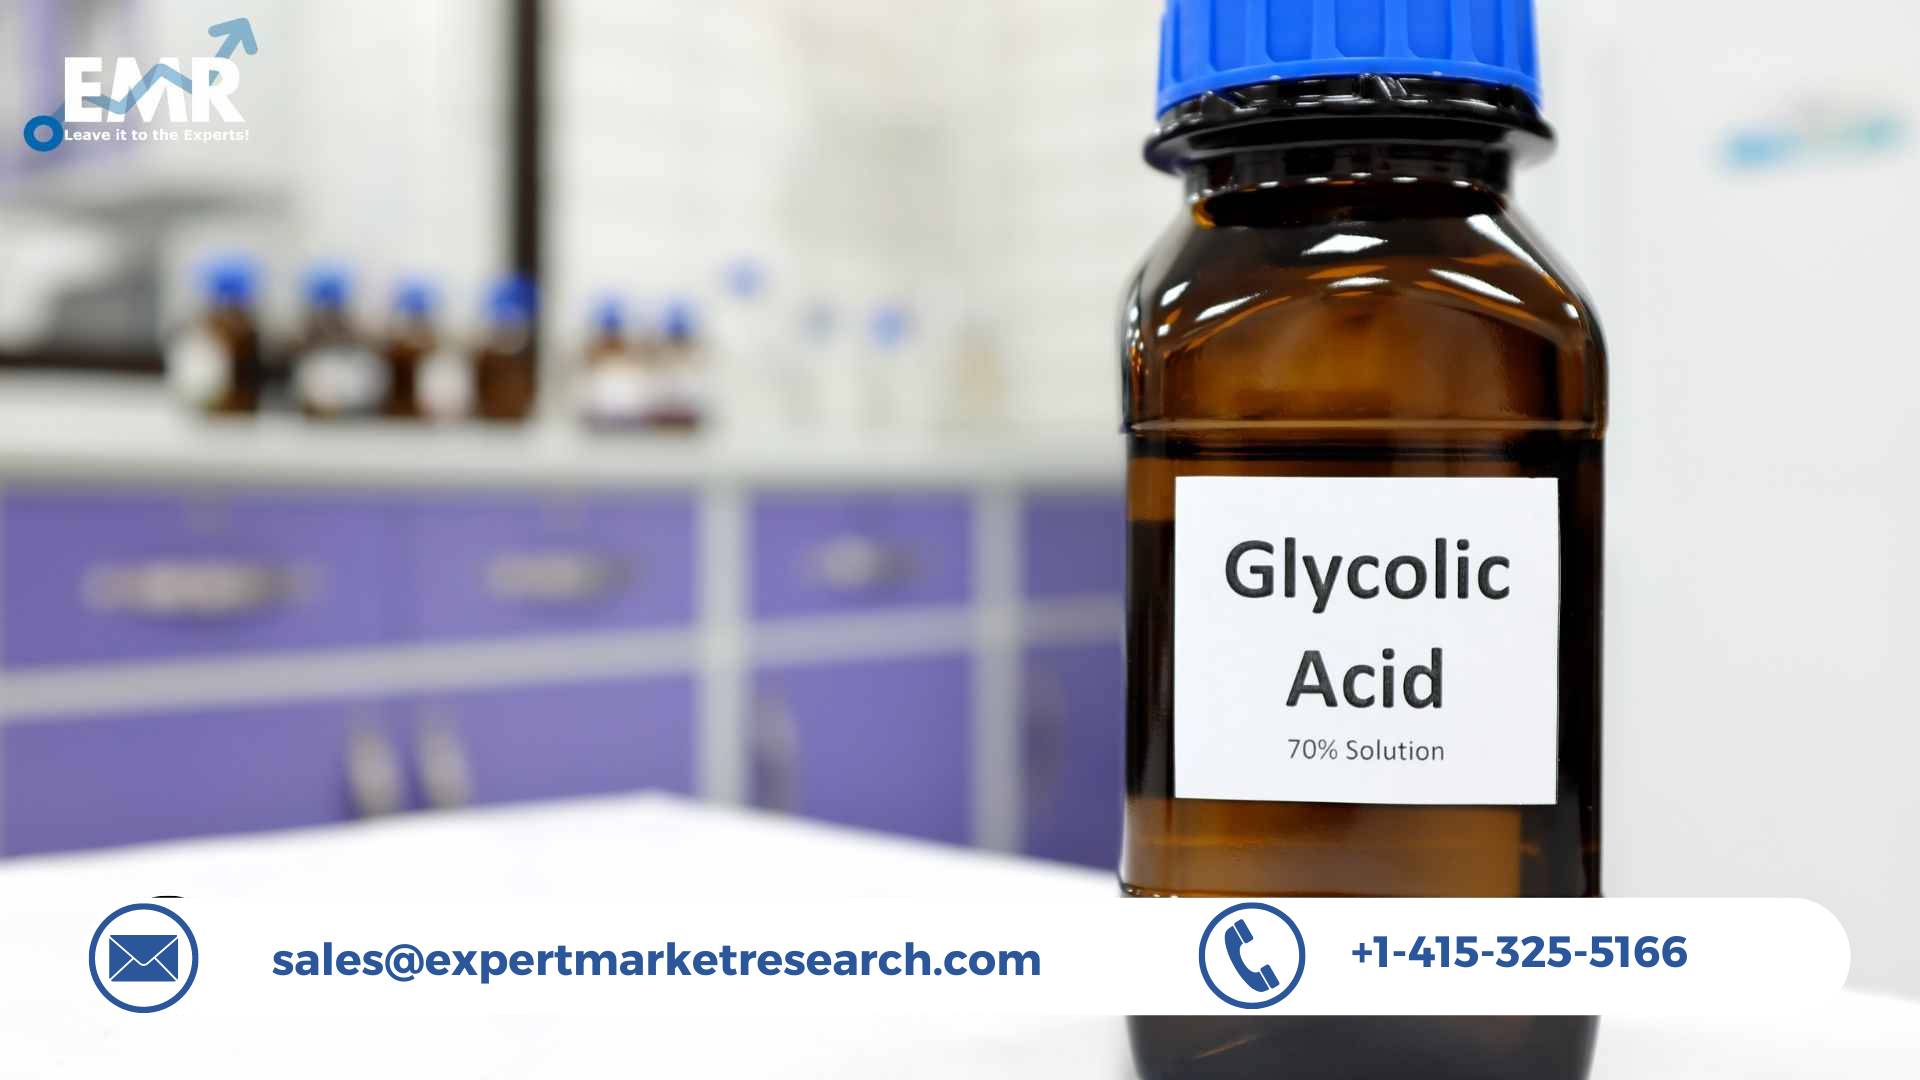 Glycolic Acid Market Analysis